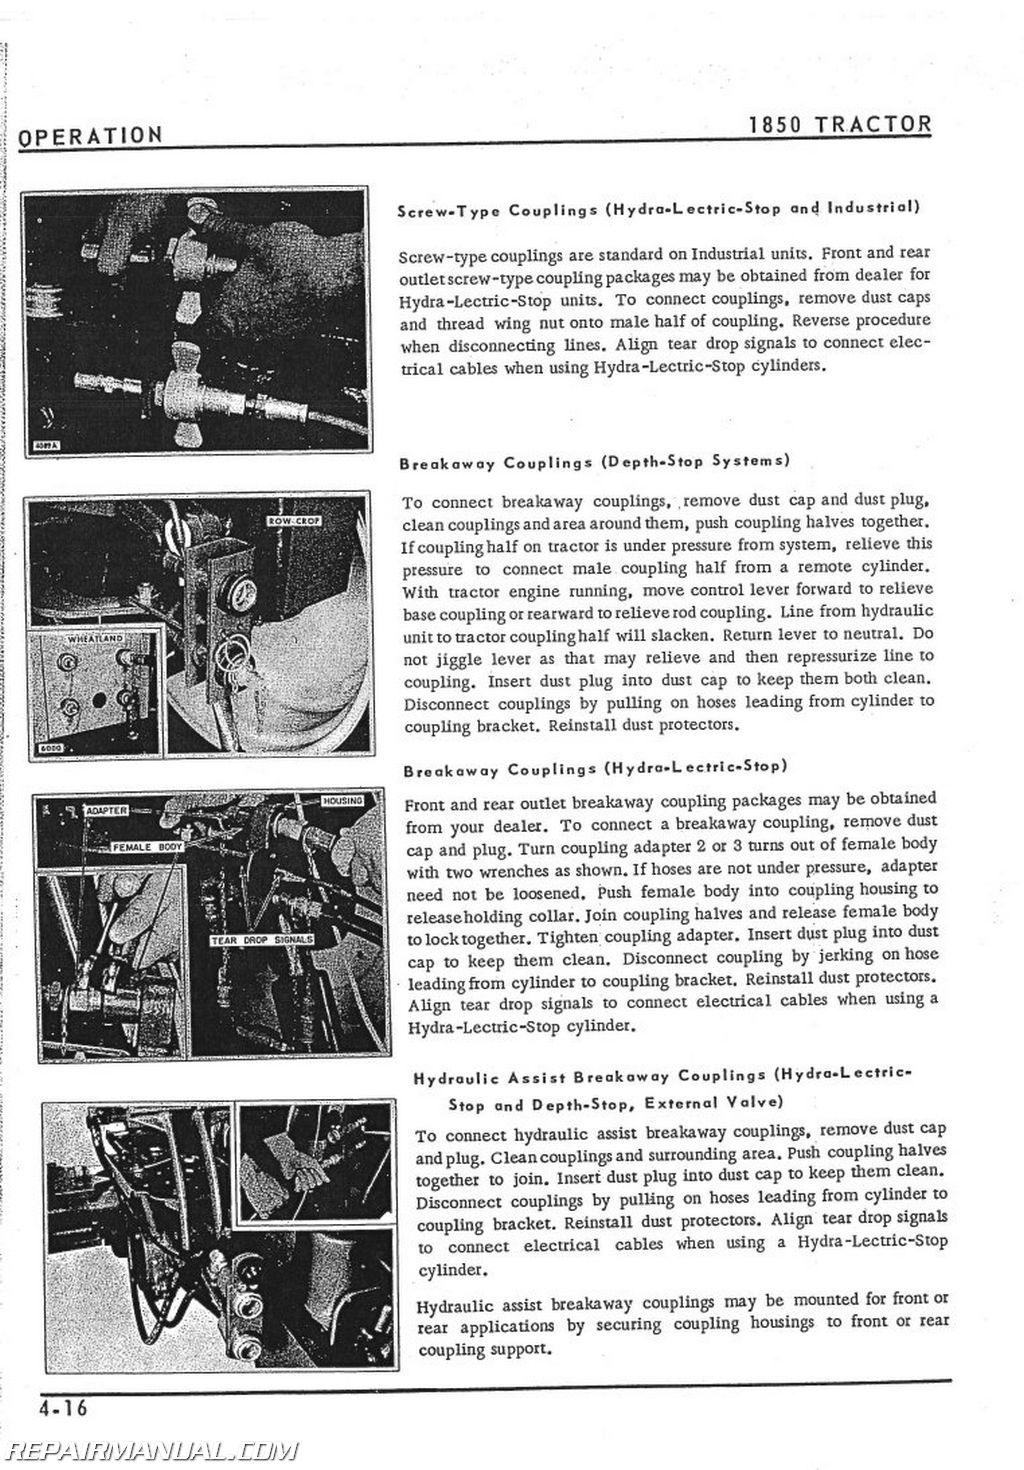 Oliver 1850 Gas Diesel Tractor Operators Manual OL 